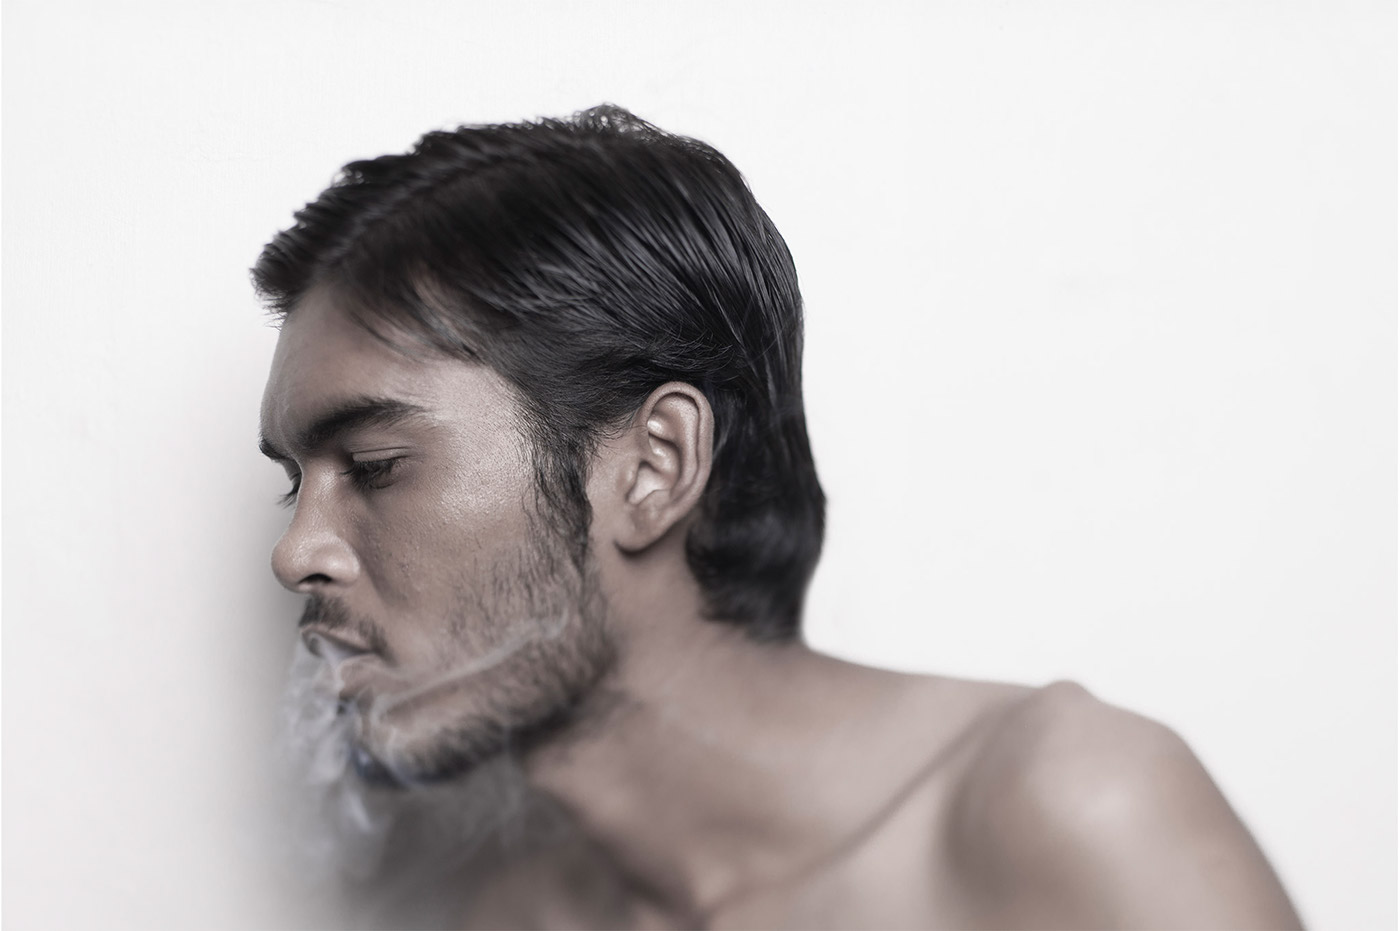 portrait smoker smoke